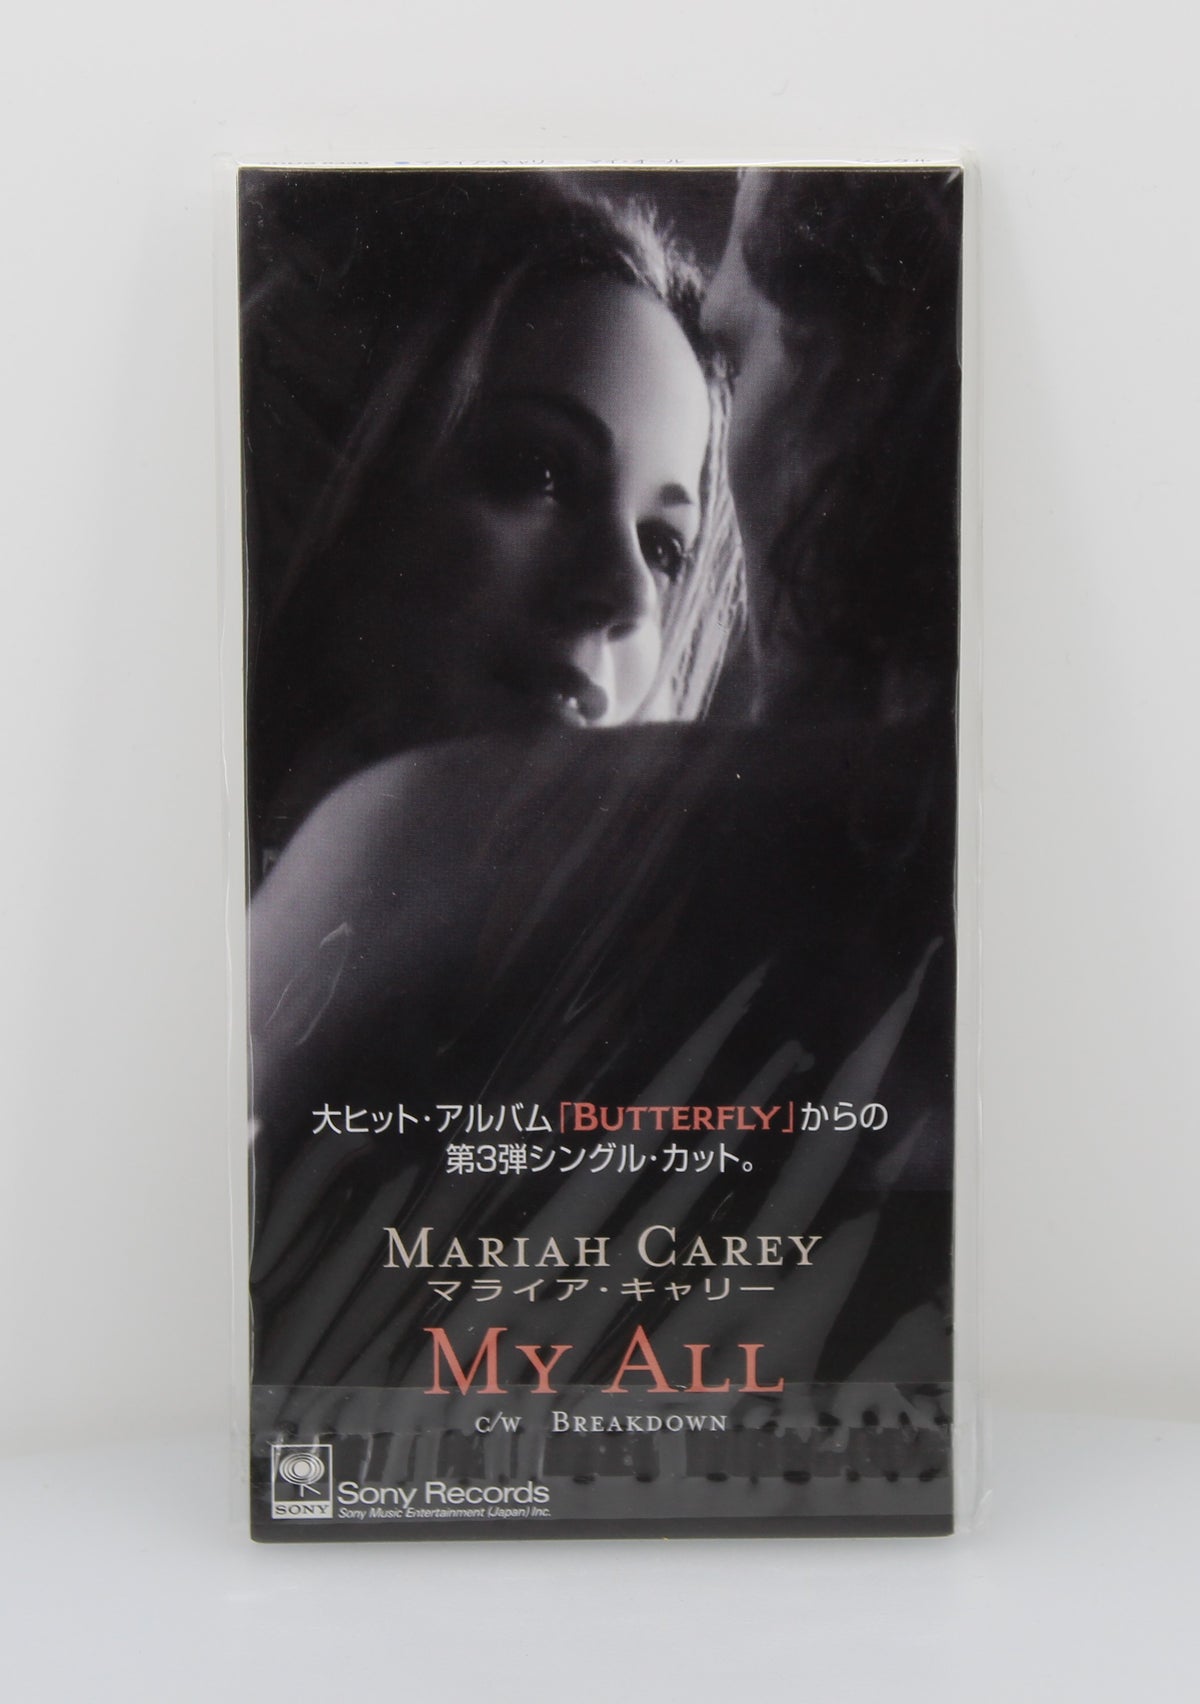 Mariah Carey – My All, CD, Mini, Single, Japan 1998